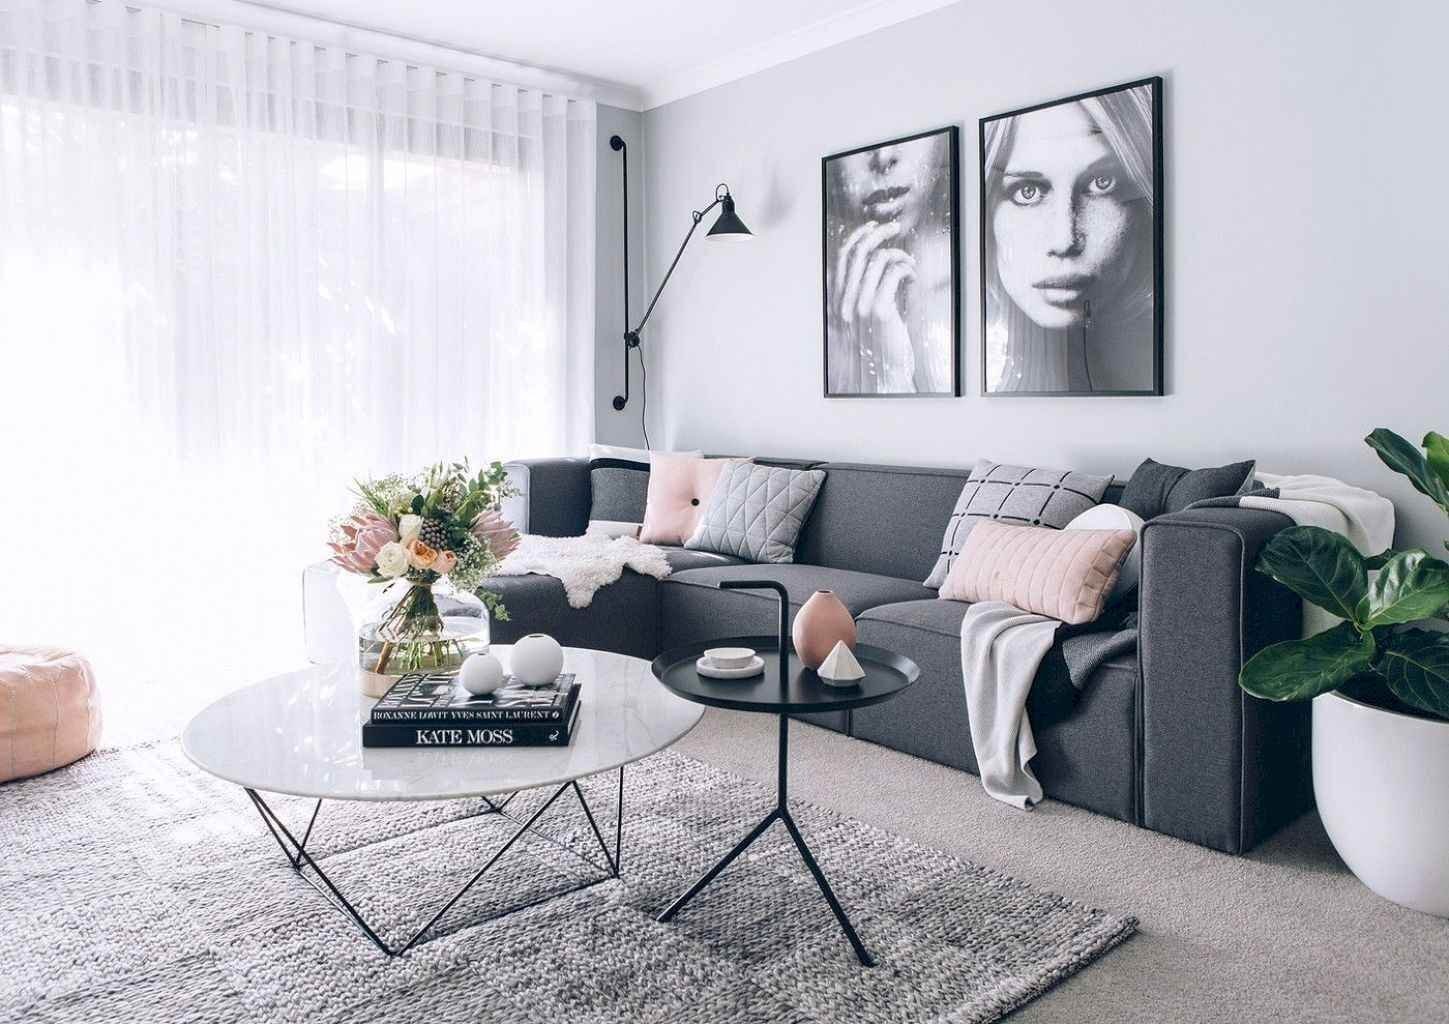 мягкая мебель серого цвета в интерьере